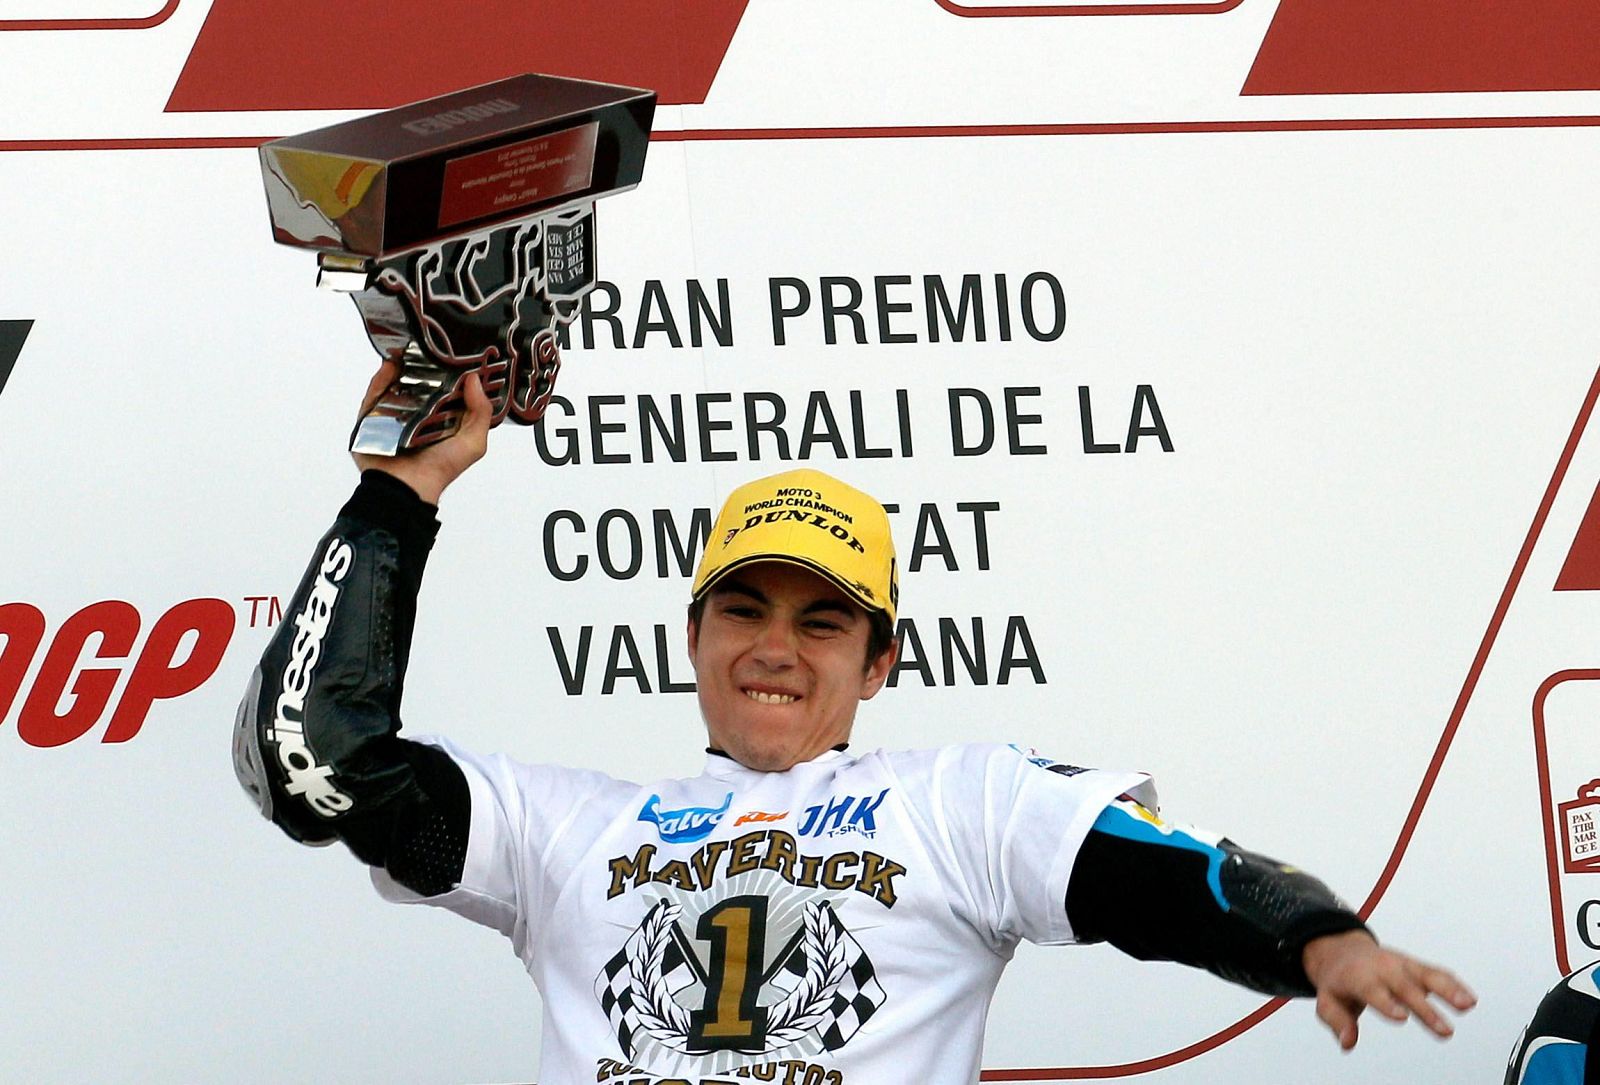 El piloto español Maverick Viñales, muestra su alegría en el podio tras proclamarse campeón del mundo